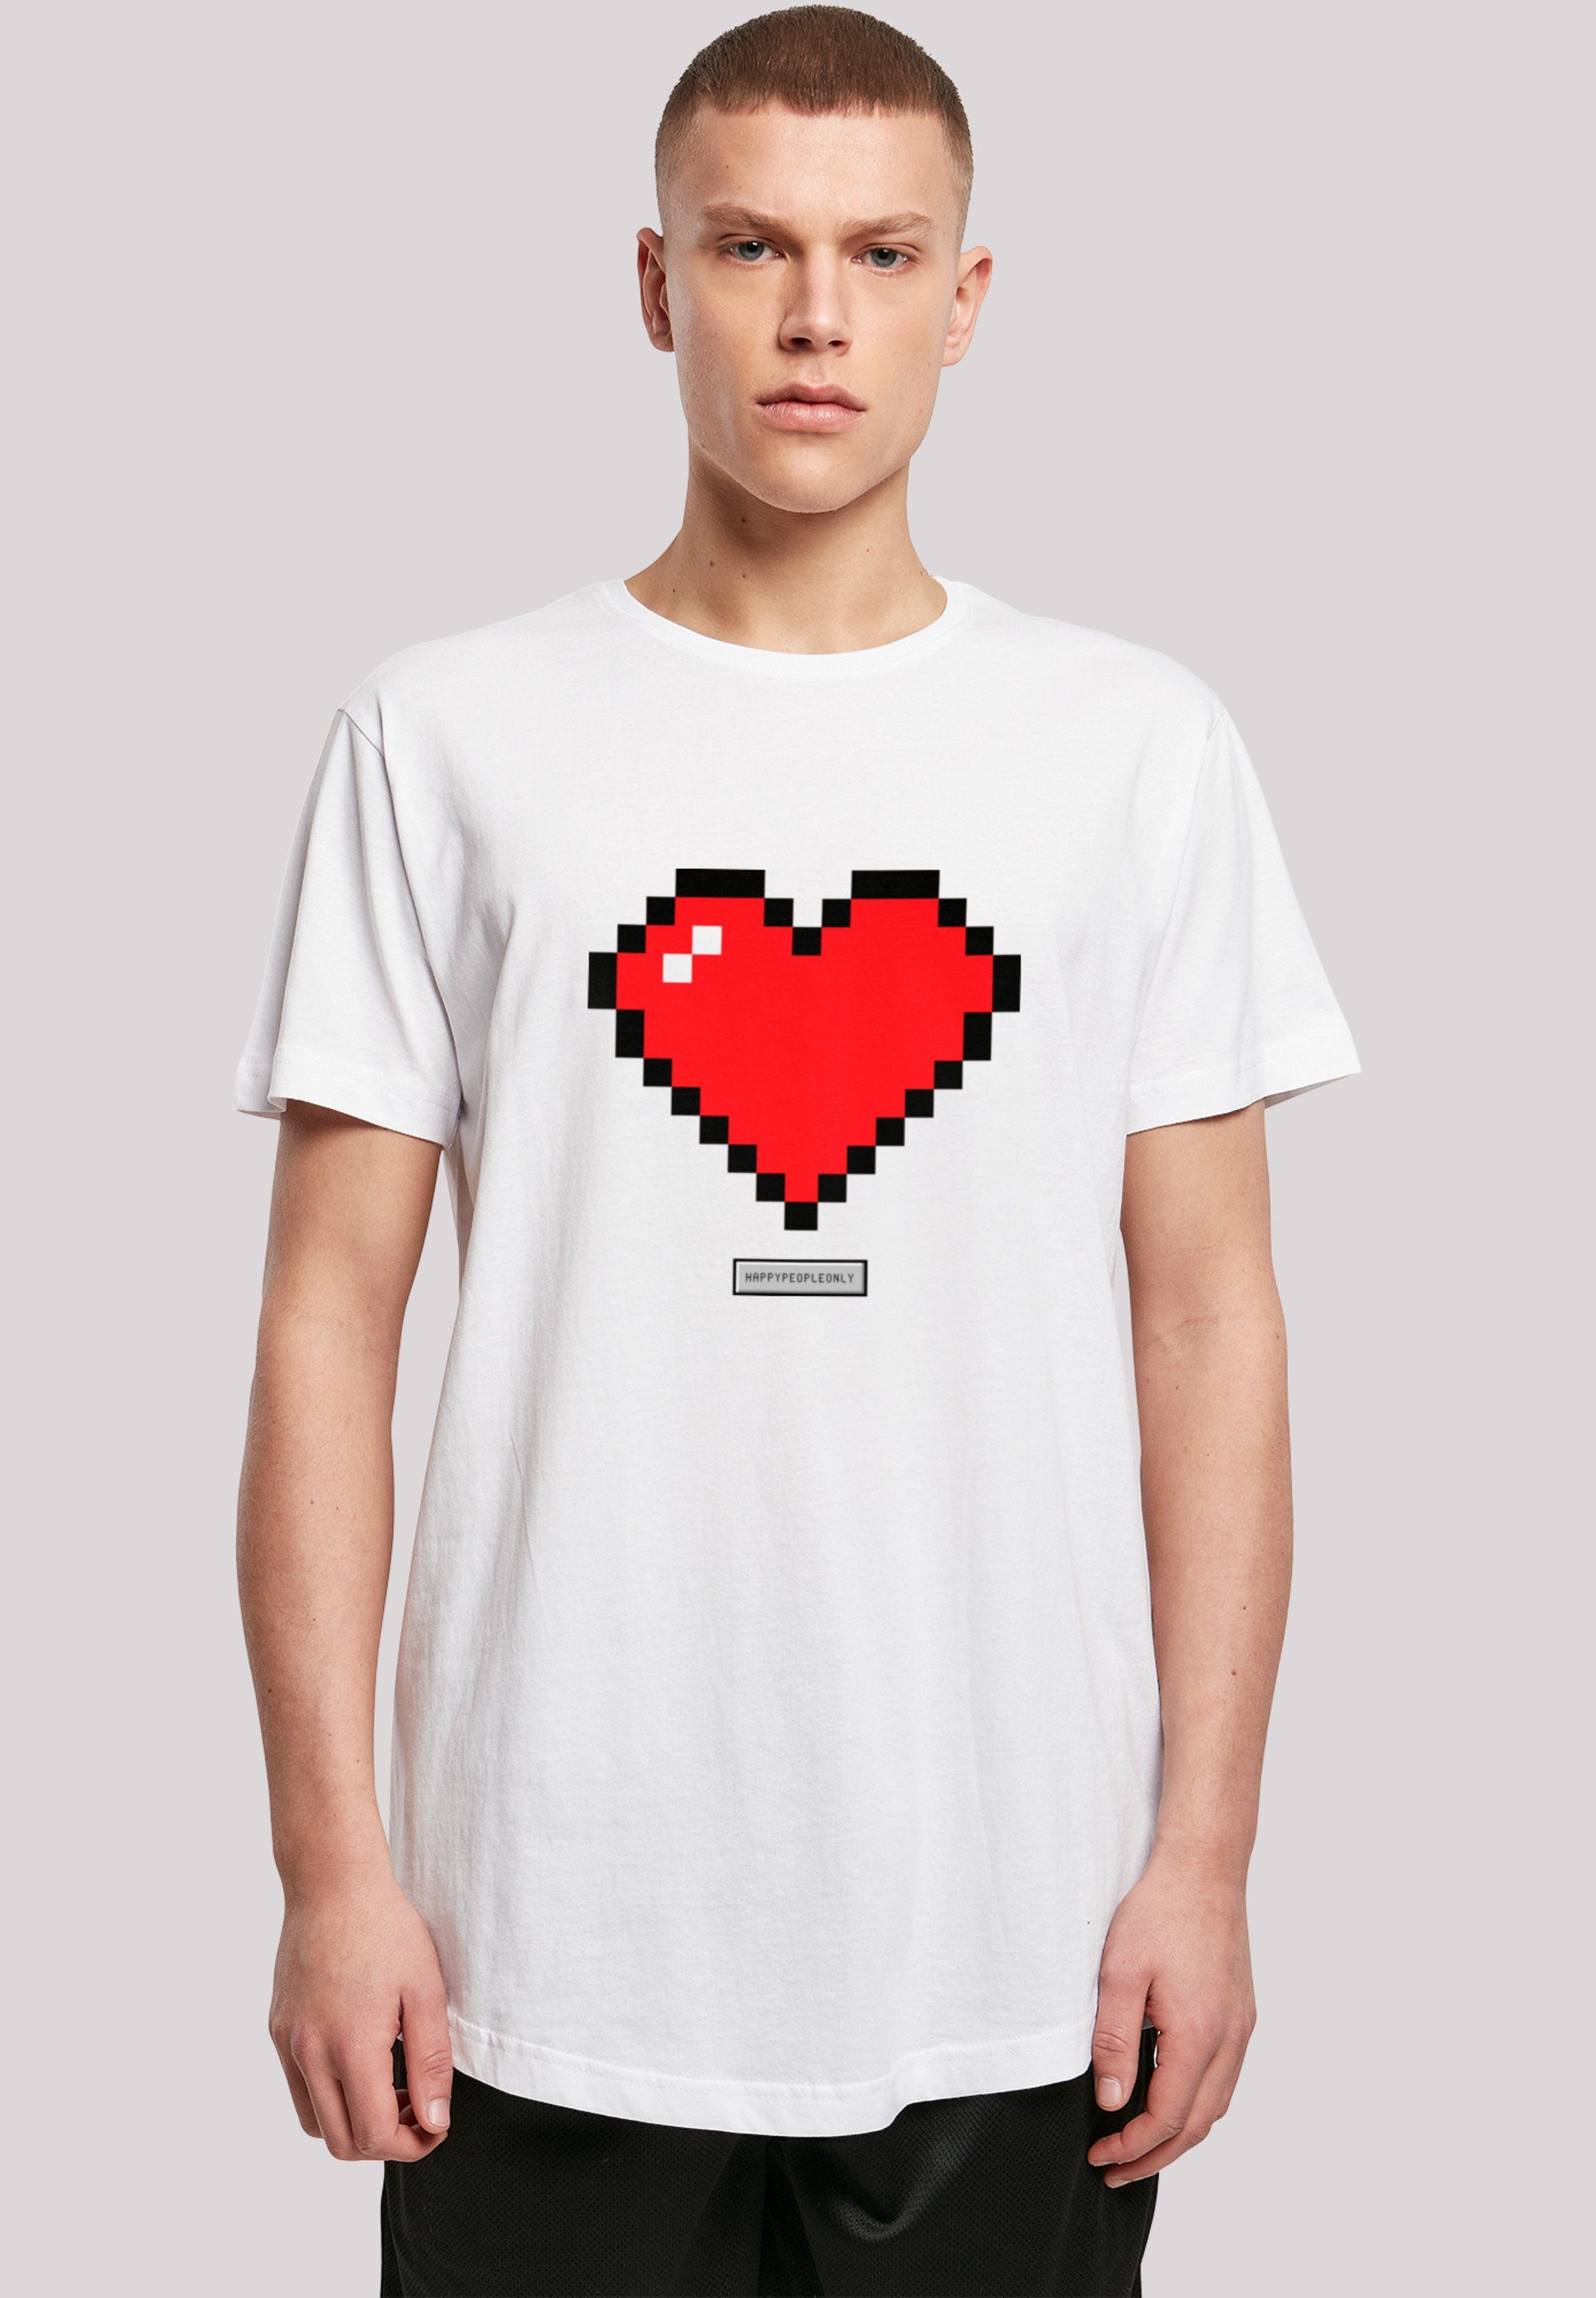 F4NT4STIC T-Shirt Pixel Herz Good trägt und Das Print, Happy ist Größe M cm Vibes groß 180 Model People